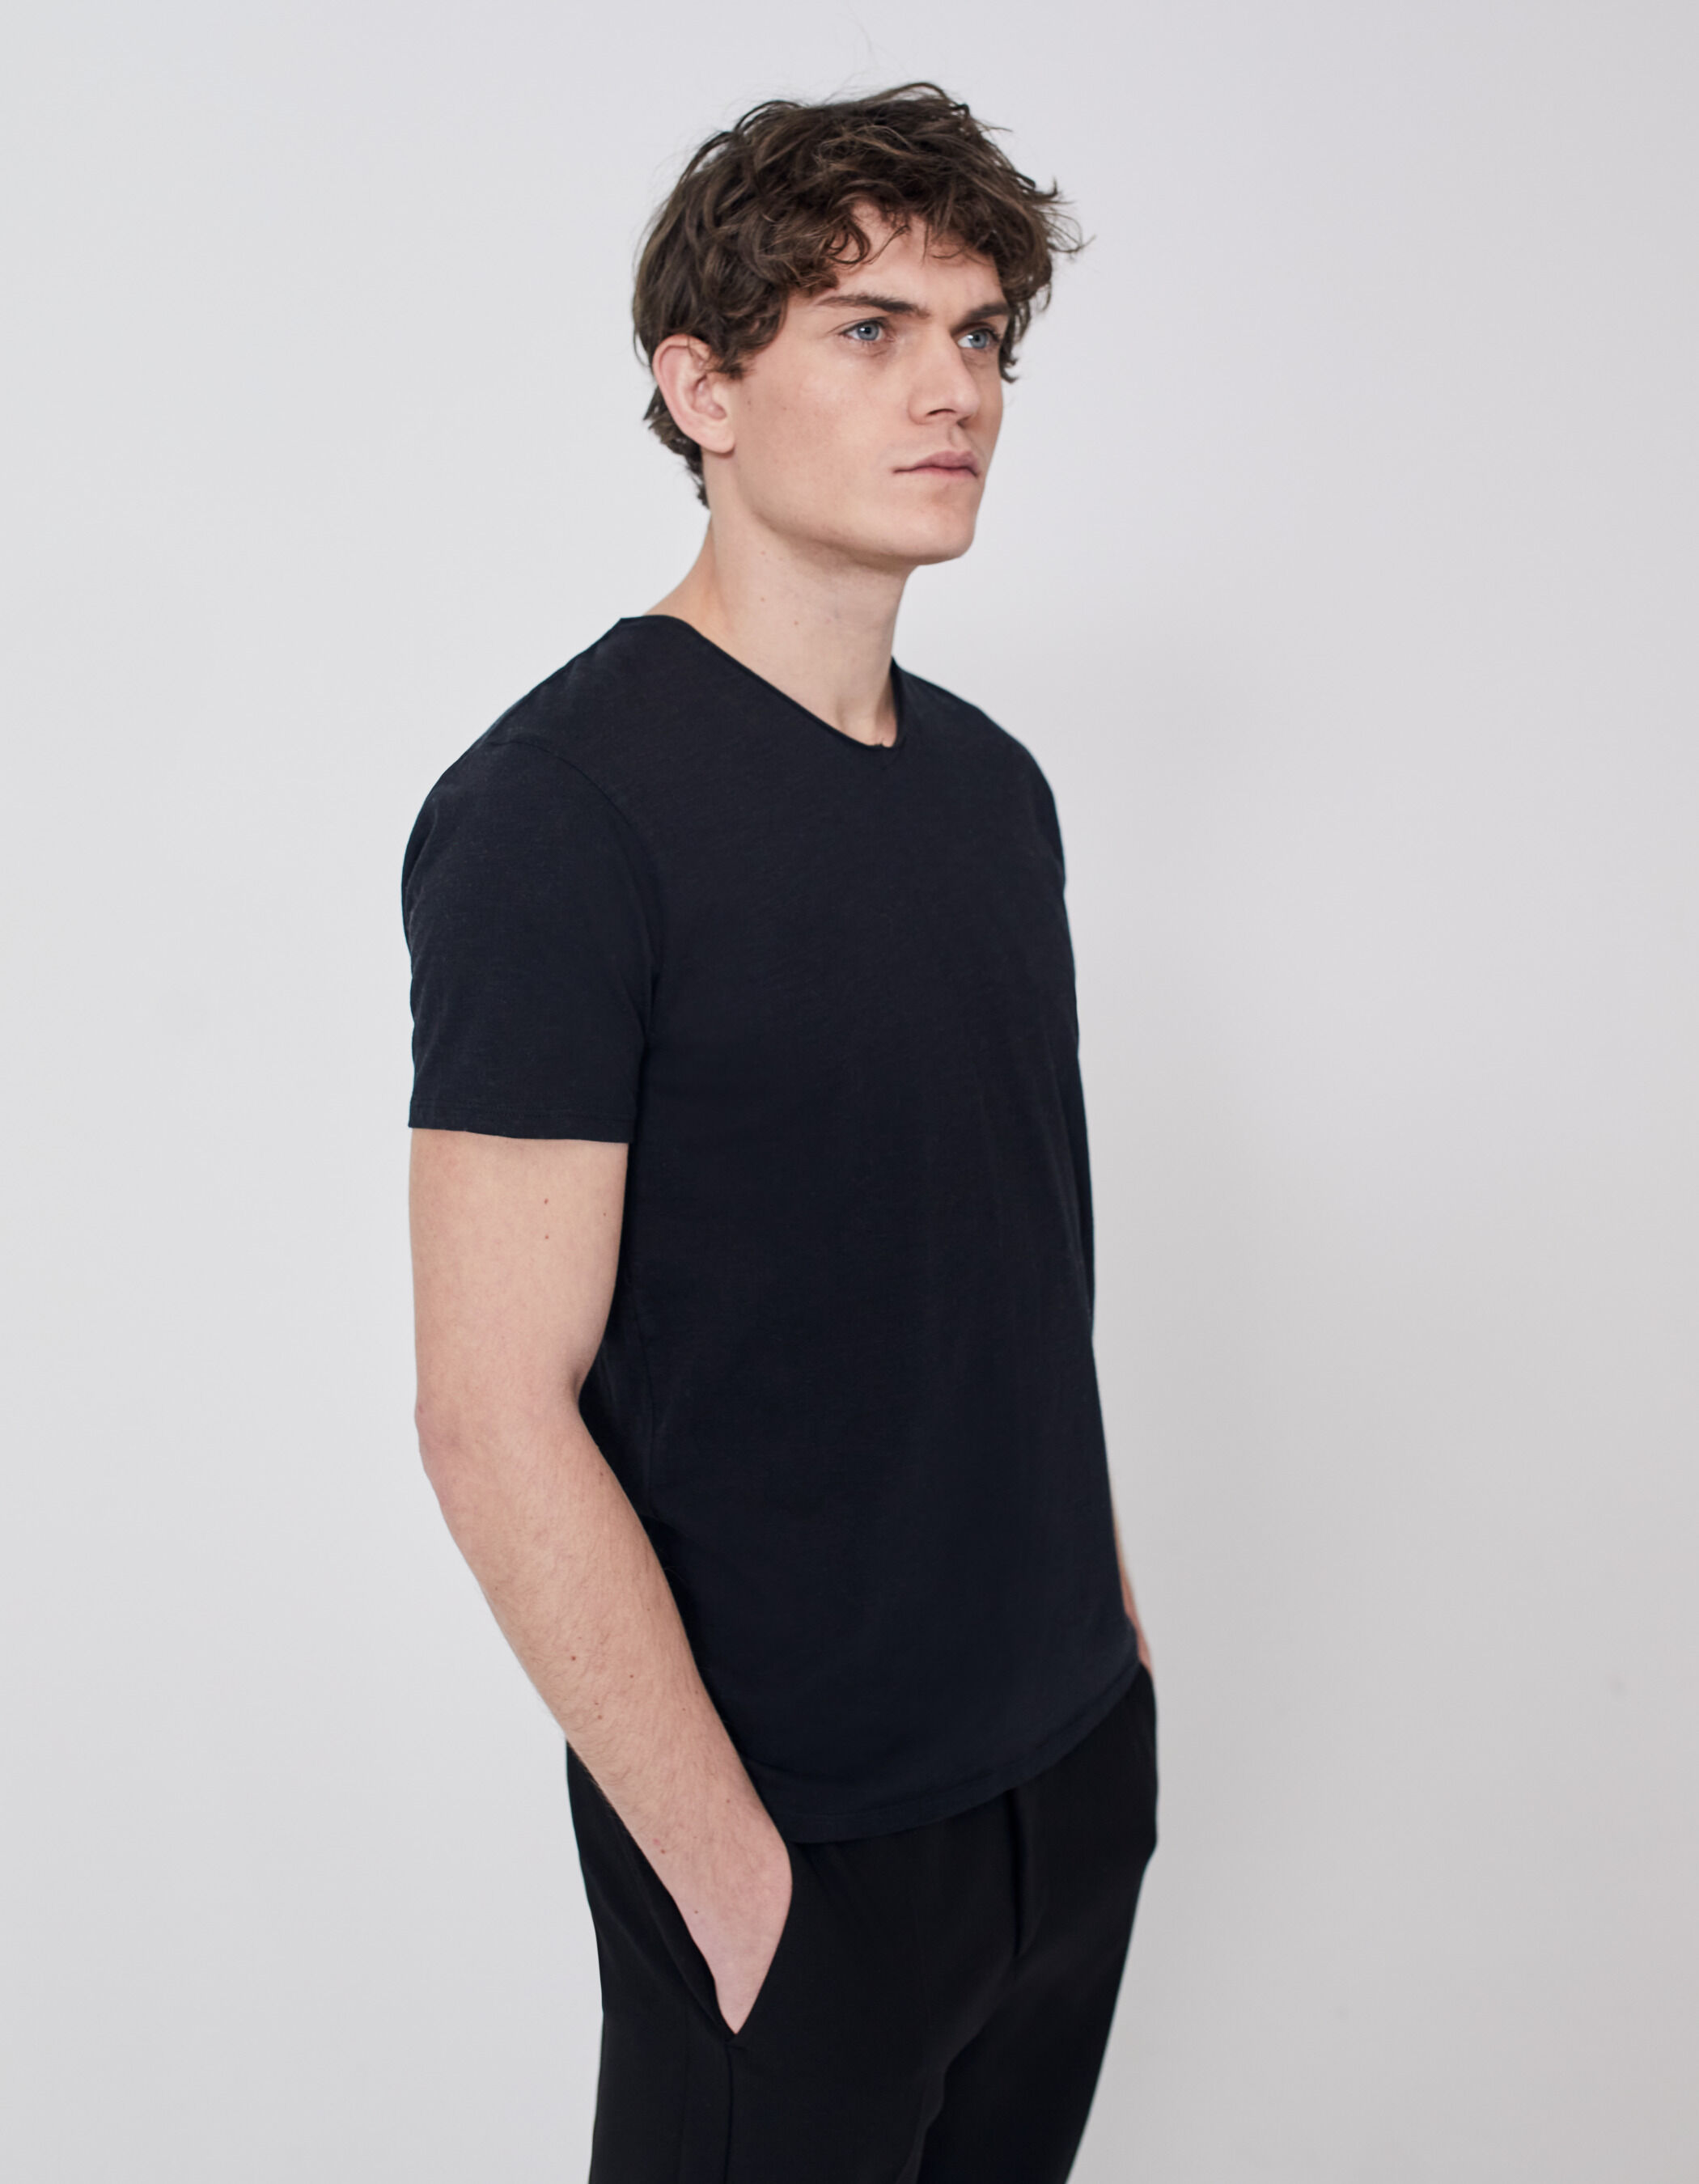 Rabatt 82 % DAMEN Hemden & T-Shirts T-Shirt Print Weiß/Schwarz 38 Easy Wear T-Shirt 